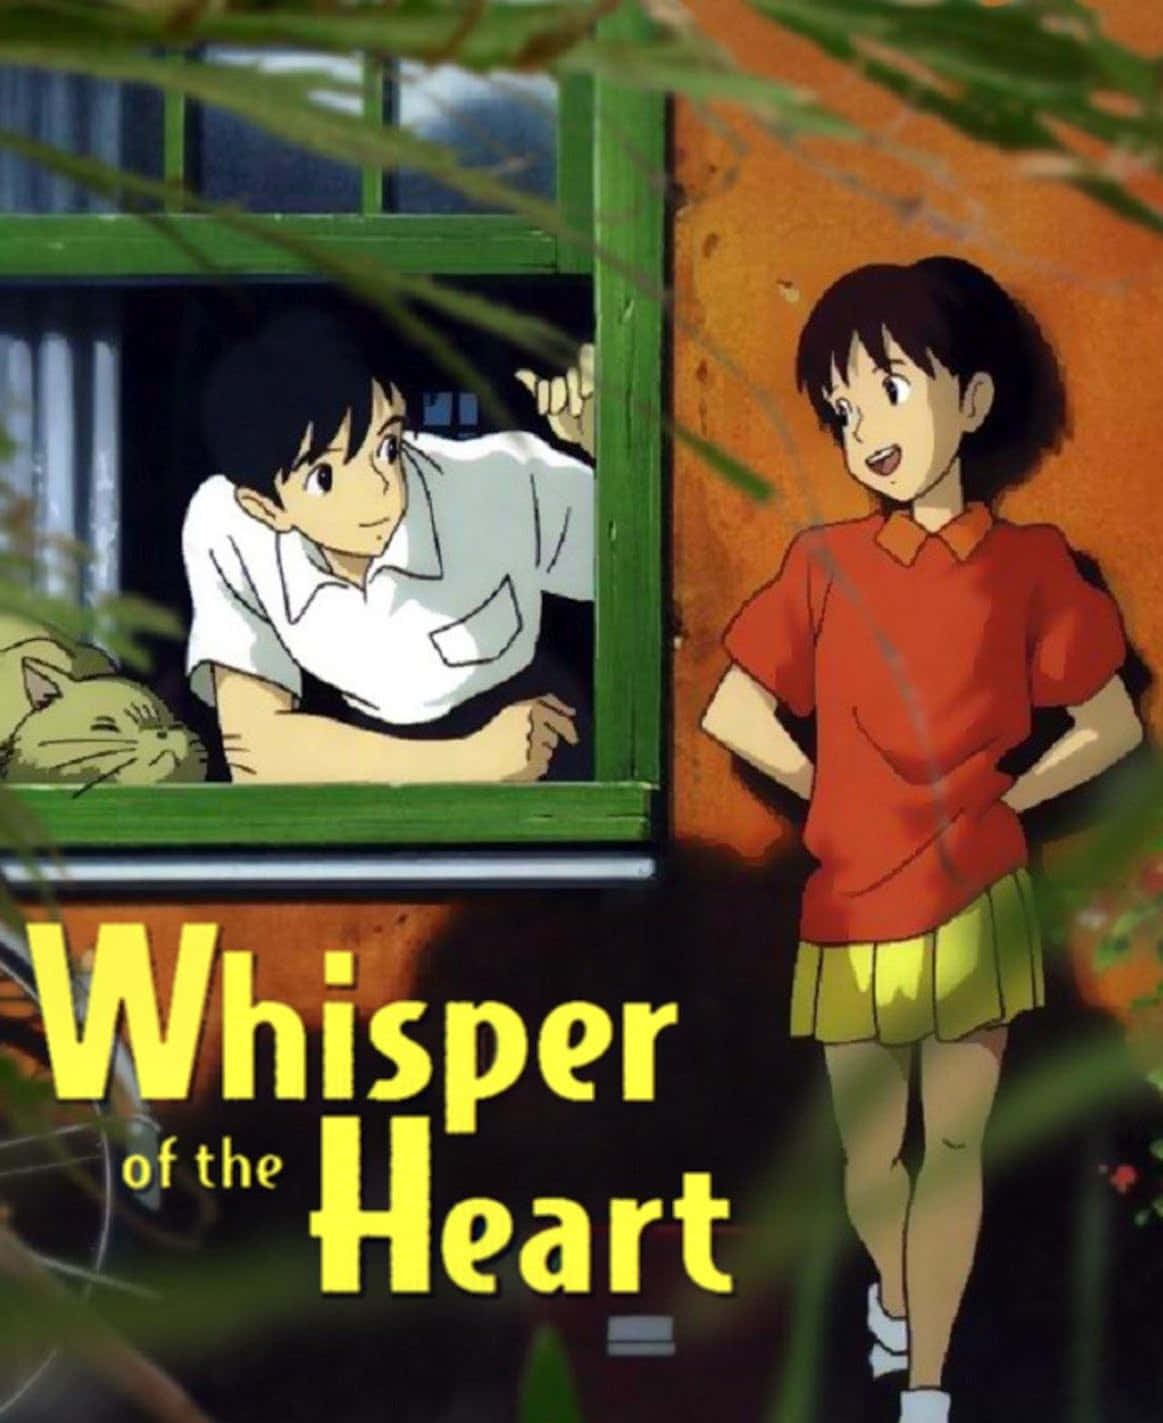 Whisper of the Heart Anime Movie Scene Wallpaper